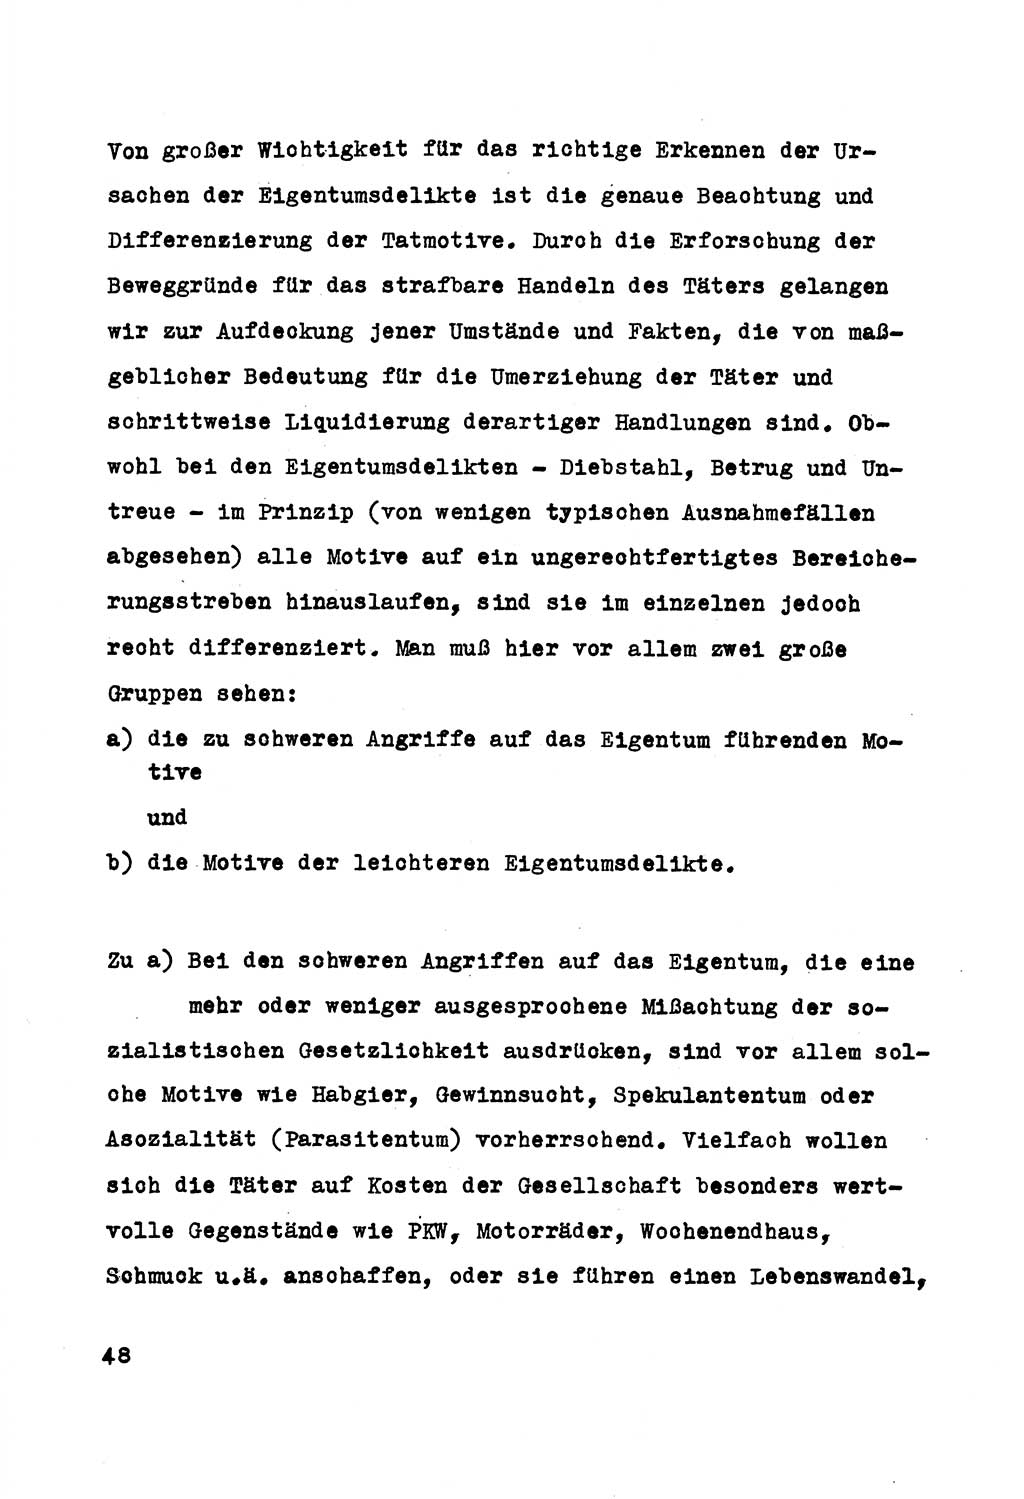 Strafrecht der DDR (Deutsche Demokratische Republik), Besonderer Teil, Lehrmaterial, Heft 5 1970, Seite 48 (Strafr. DDR BT Lehrmat. H. 5 1970, S. 48)